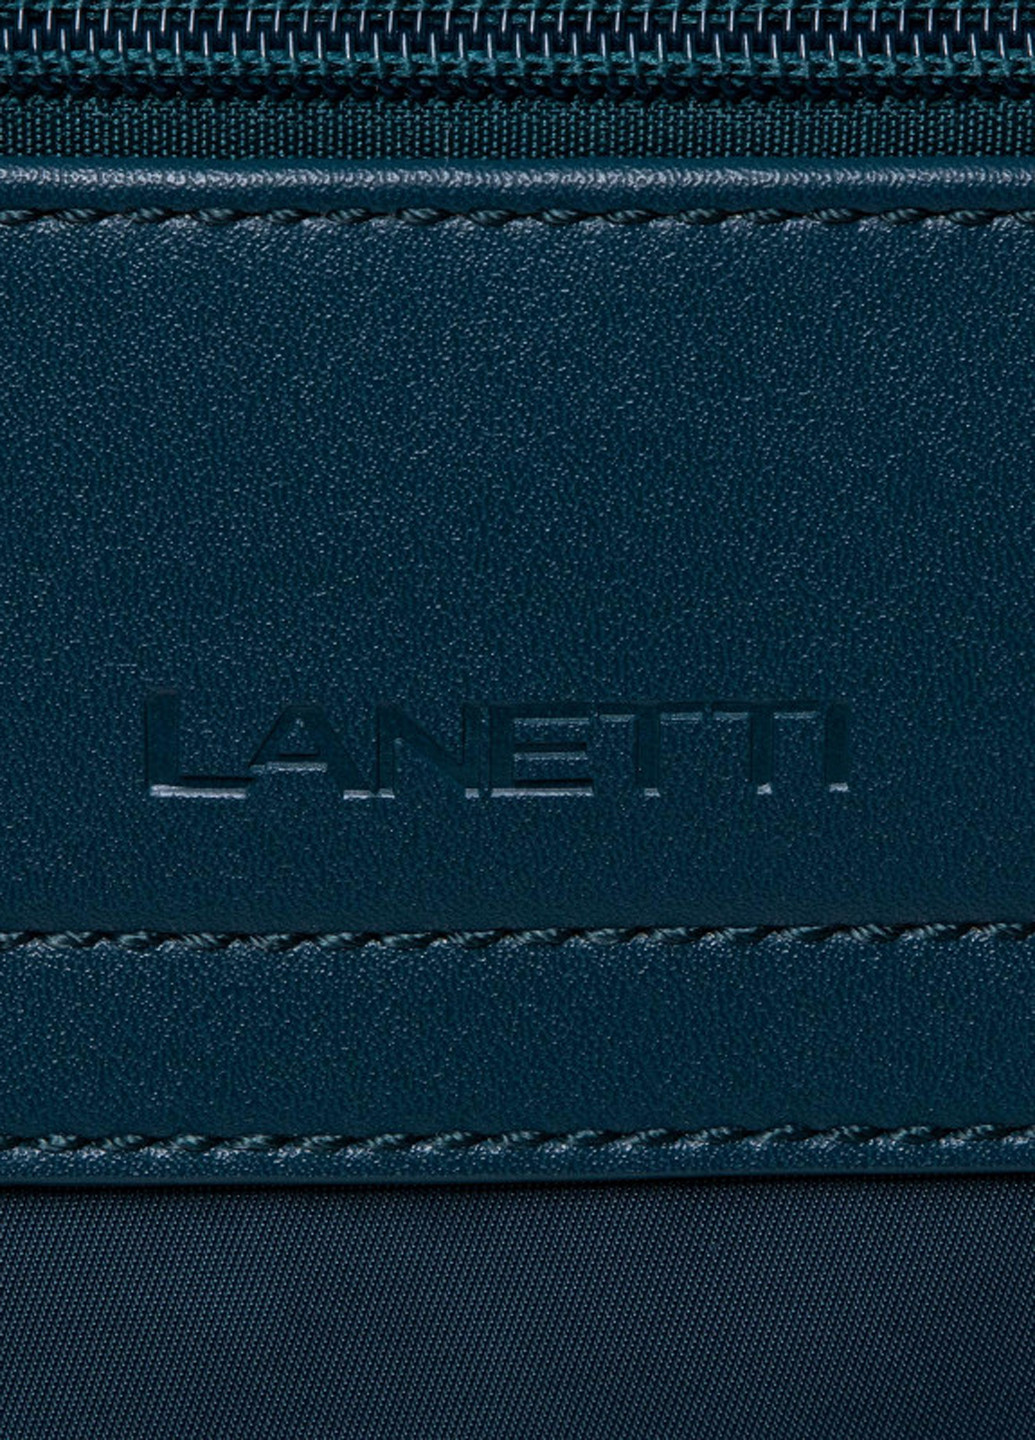 Сумка чоловіча BMM-S-033-70-03 Lanetti логотип темно-зелений